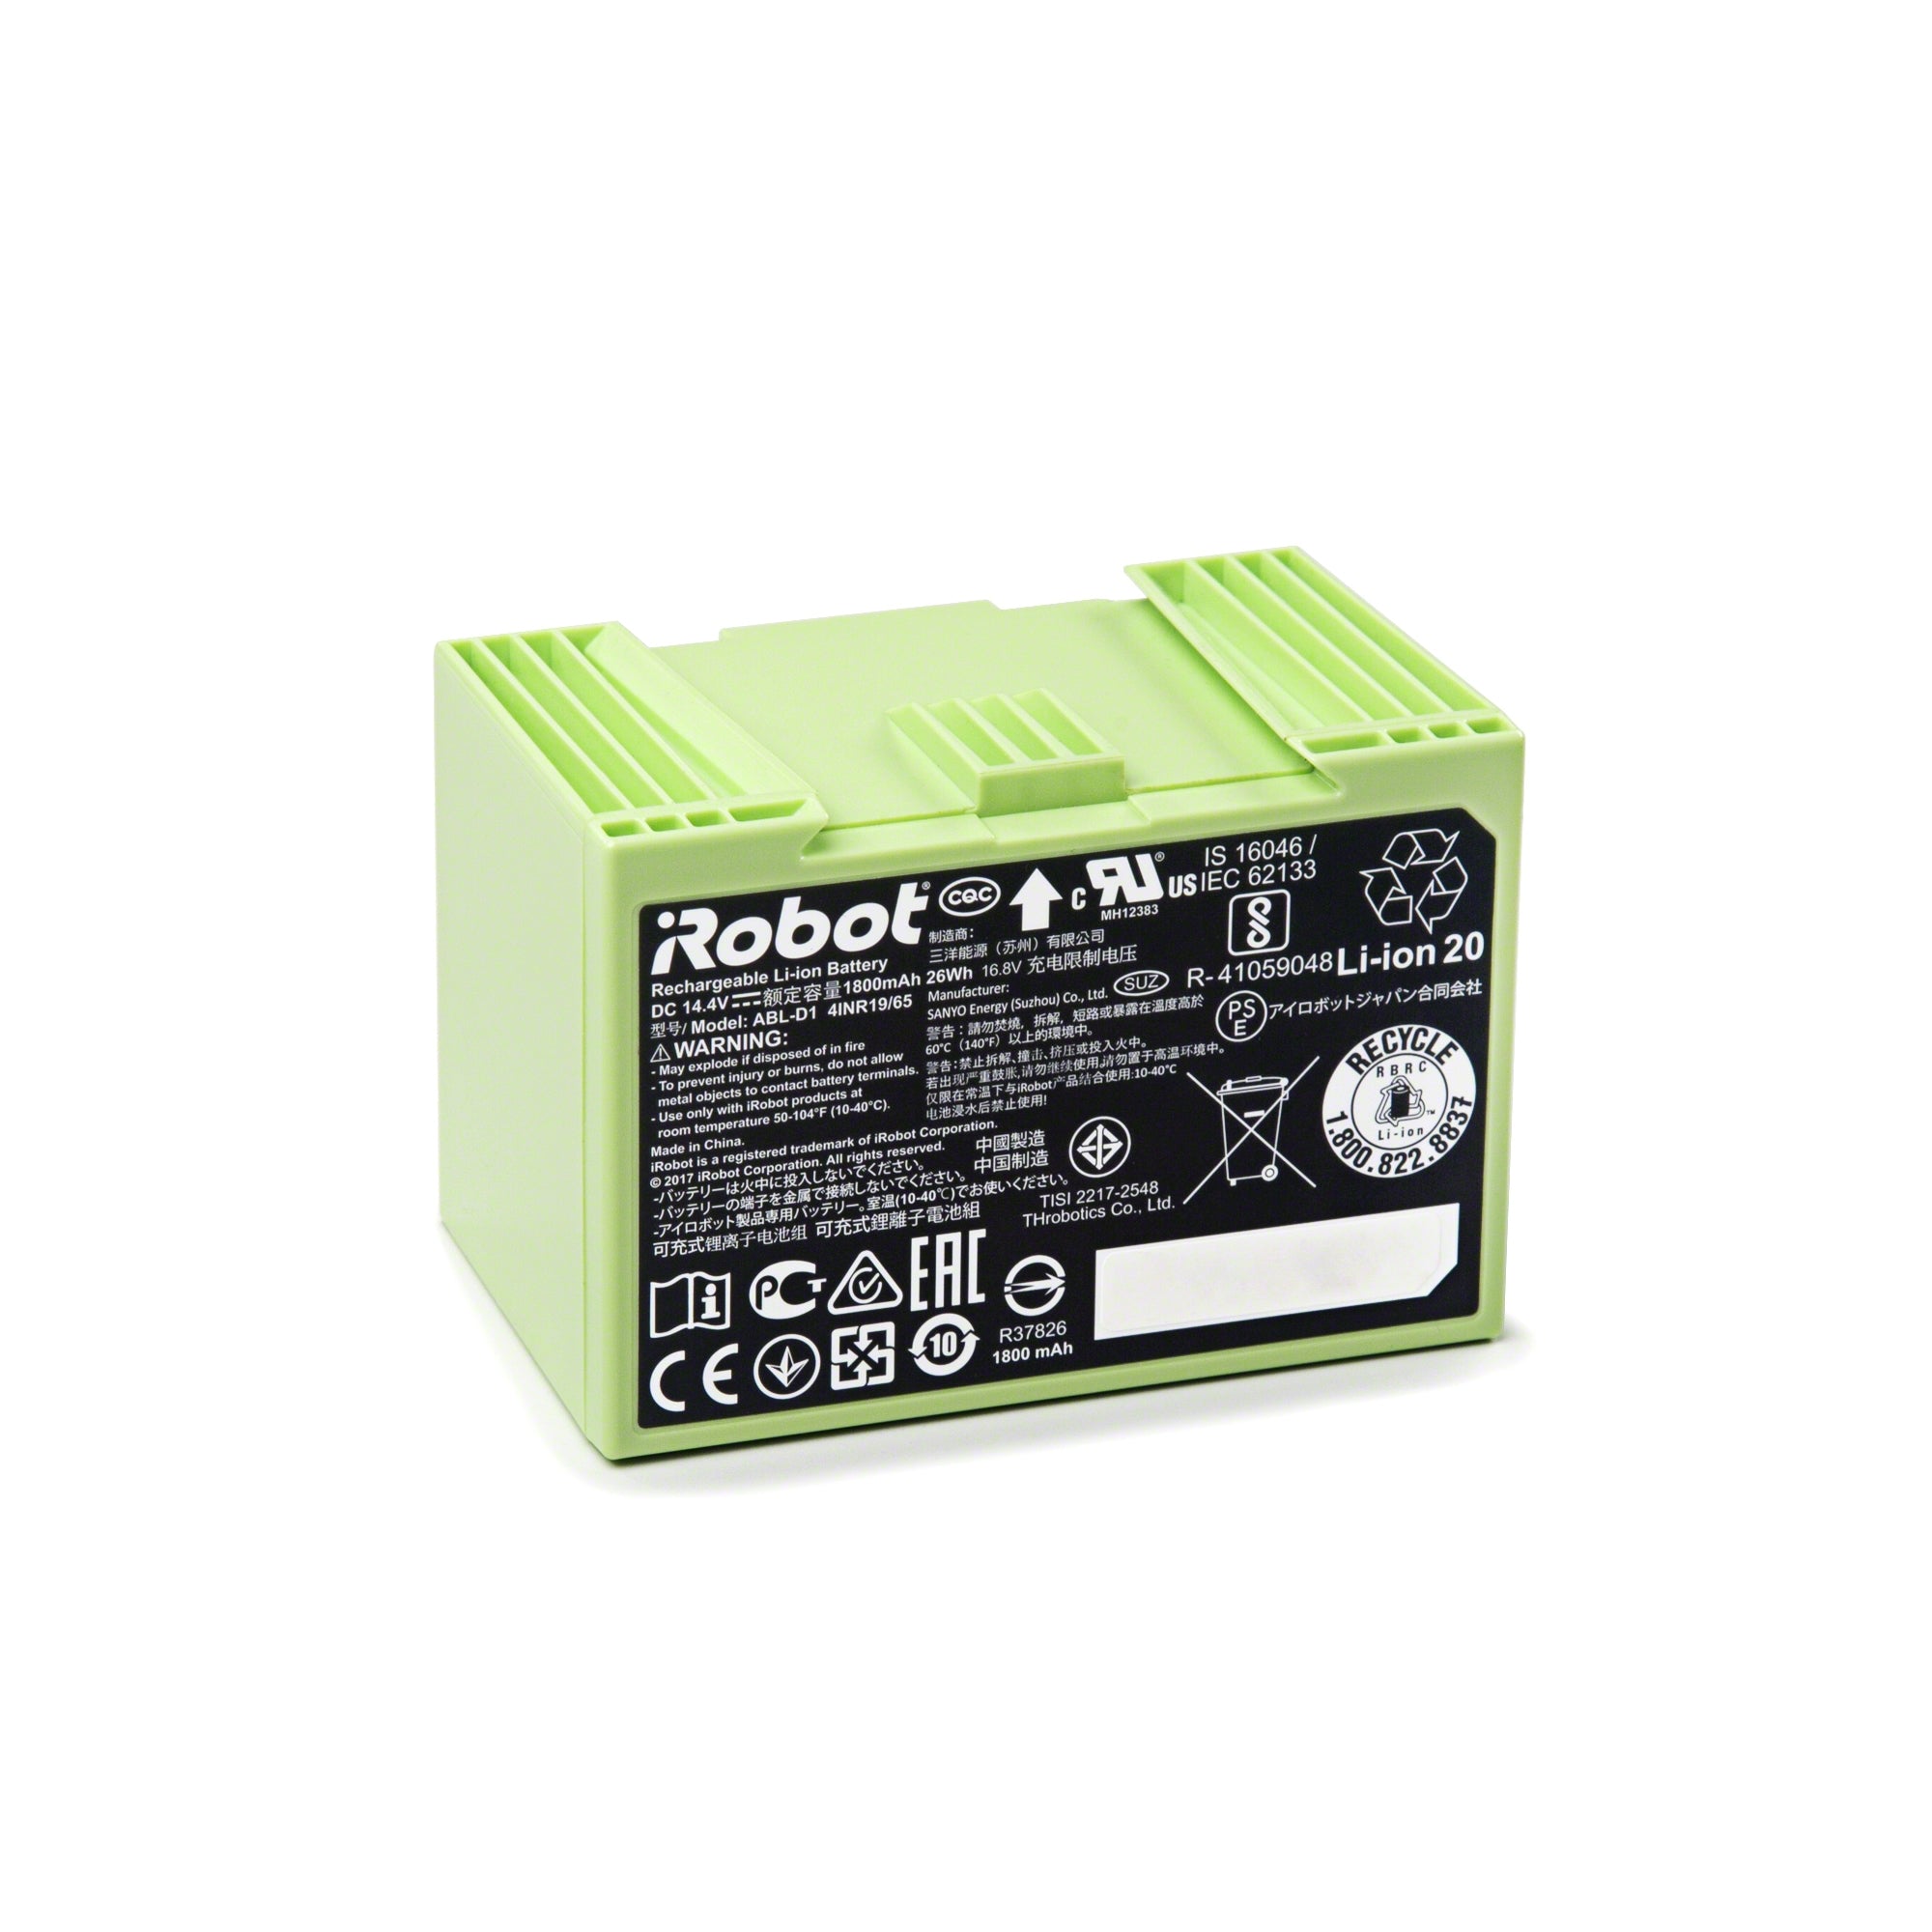 Roomba® e- og i-serie erstatnings litiumionbatteri